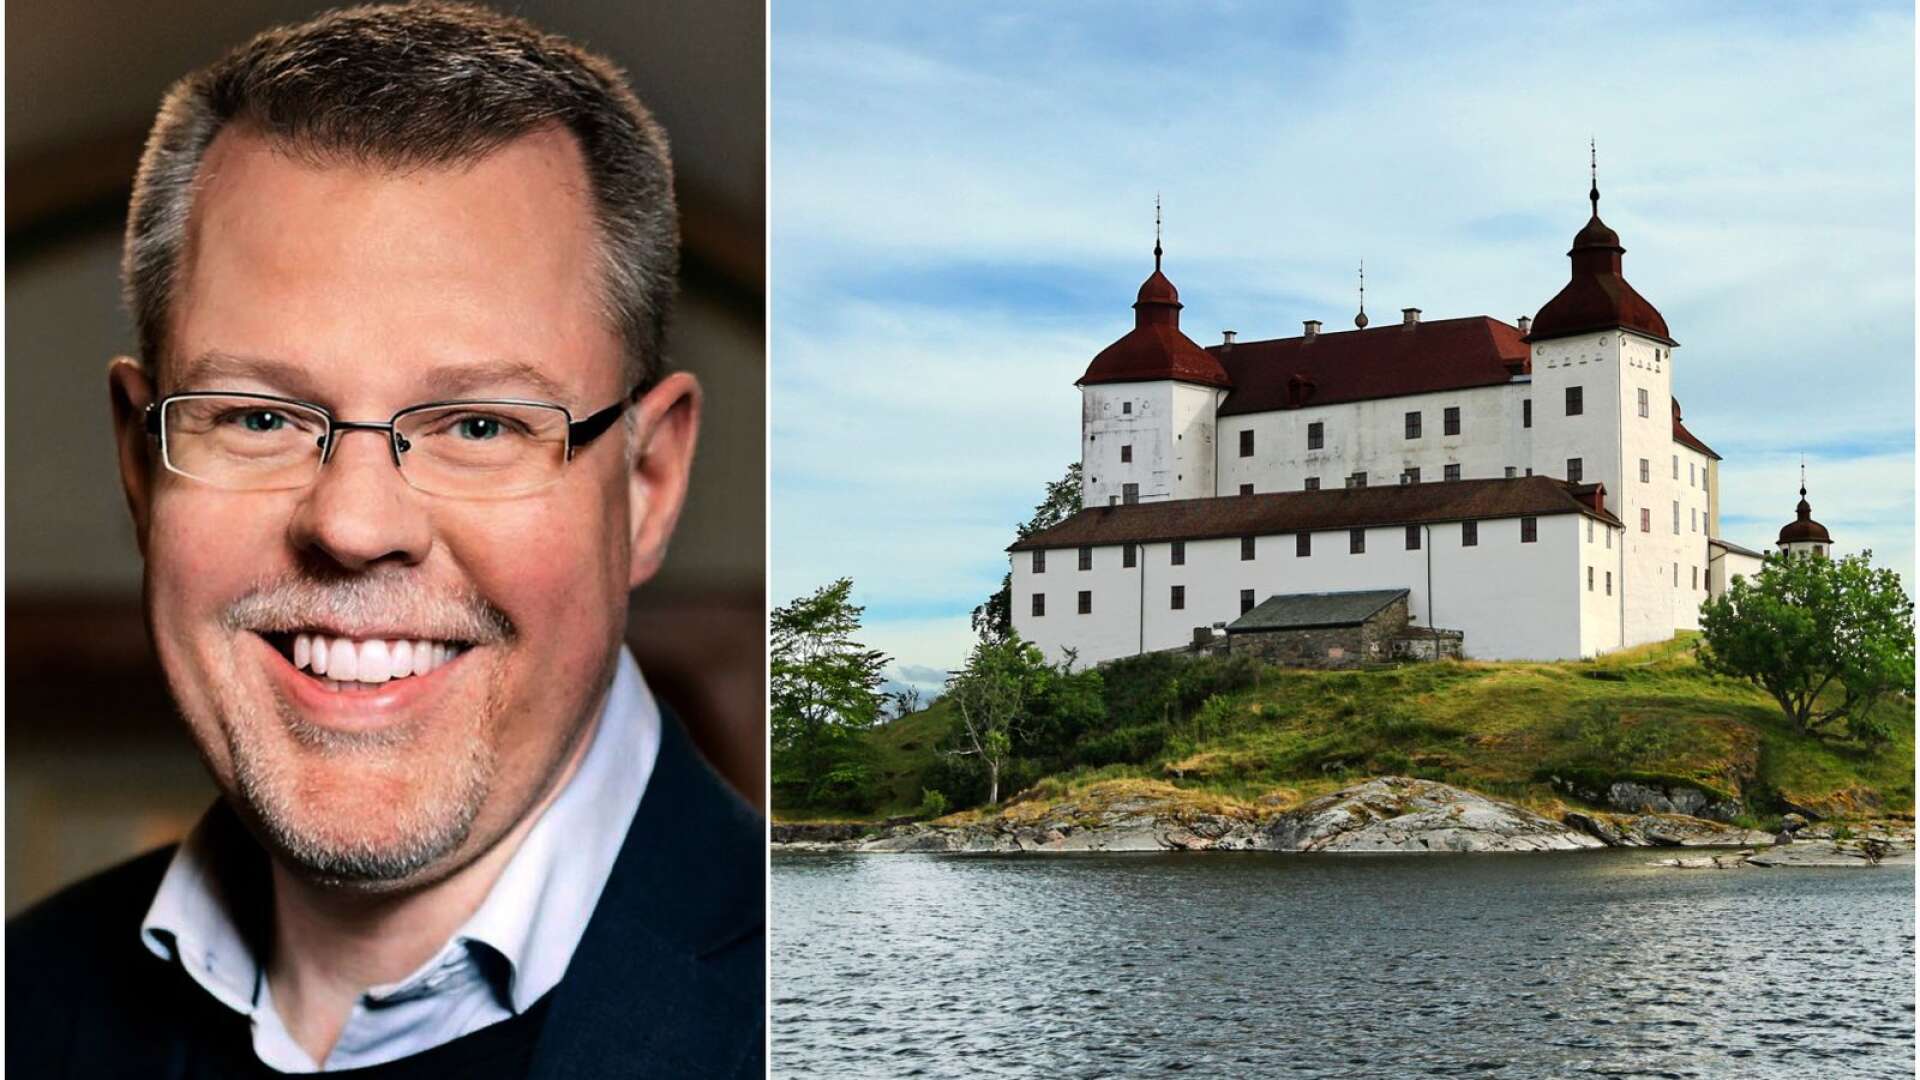 Jan Malmgren är ny vd Läckö slott. Den 1 mars 2021 tillträder han sin nya tjänst.